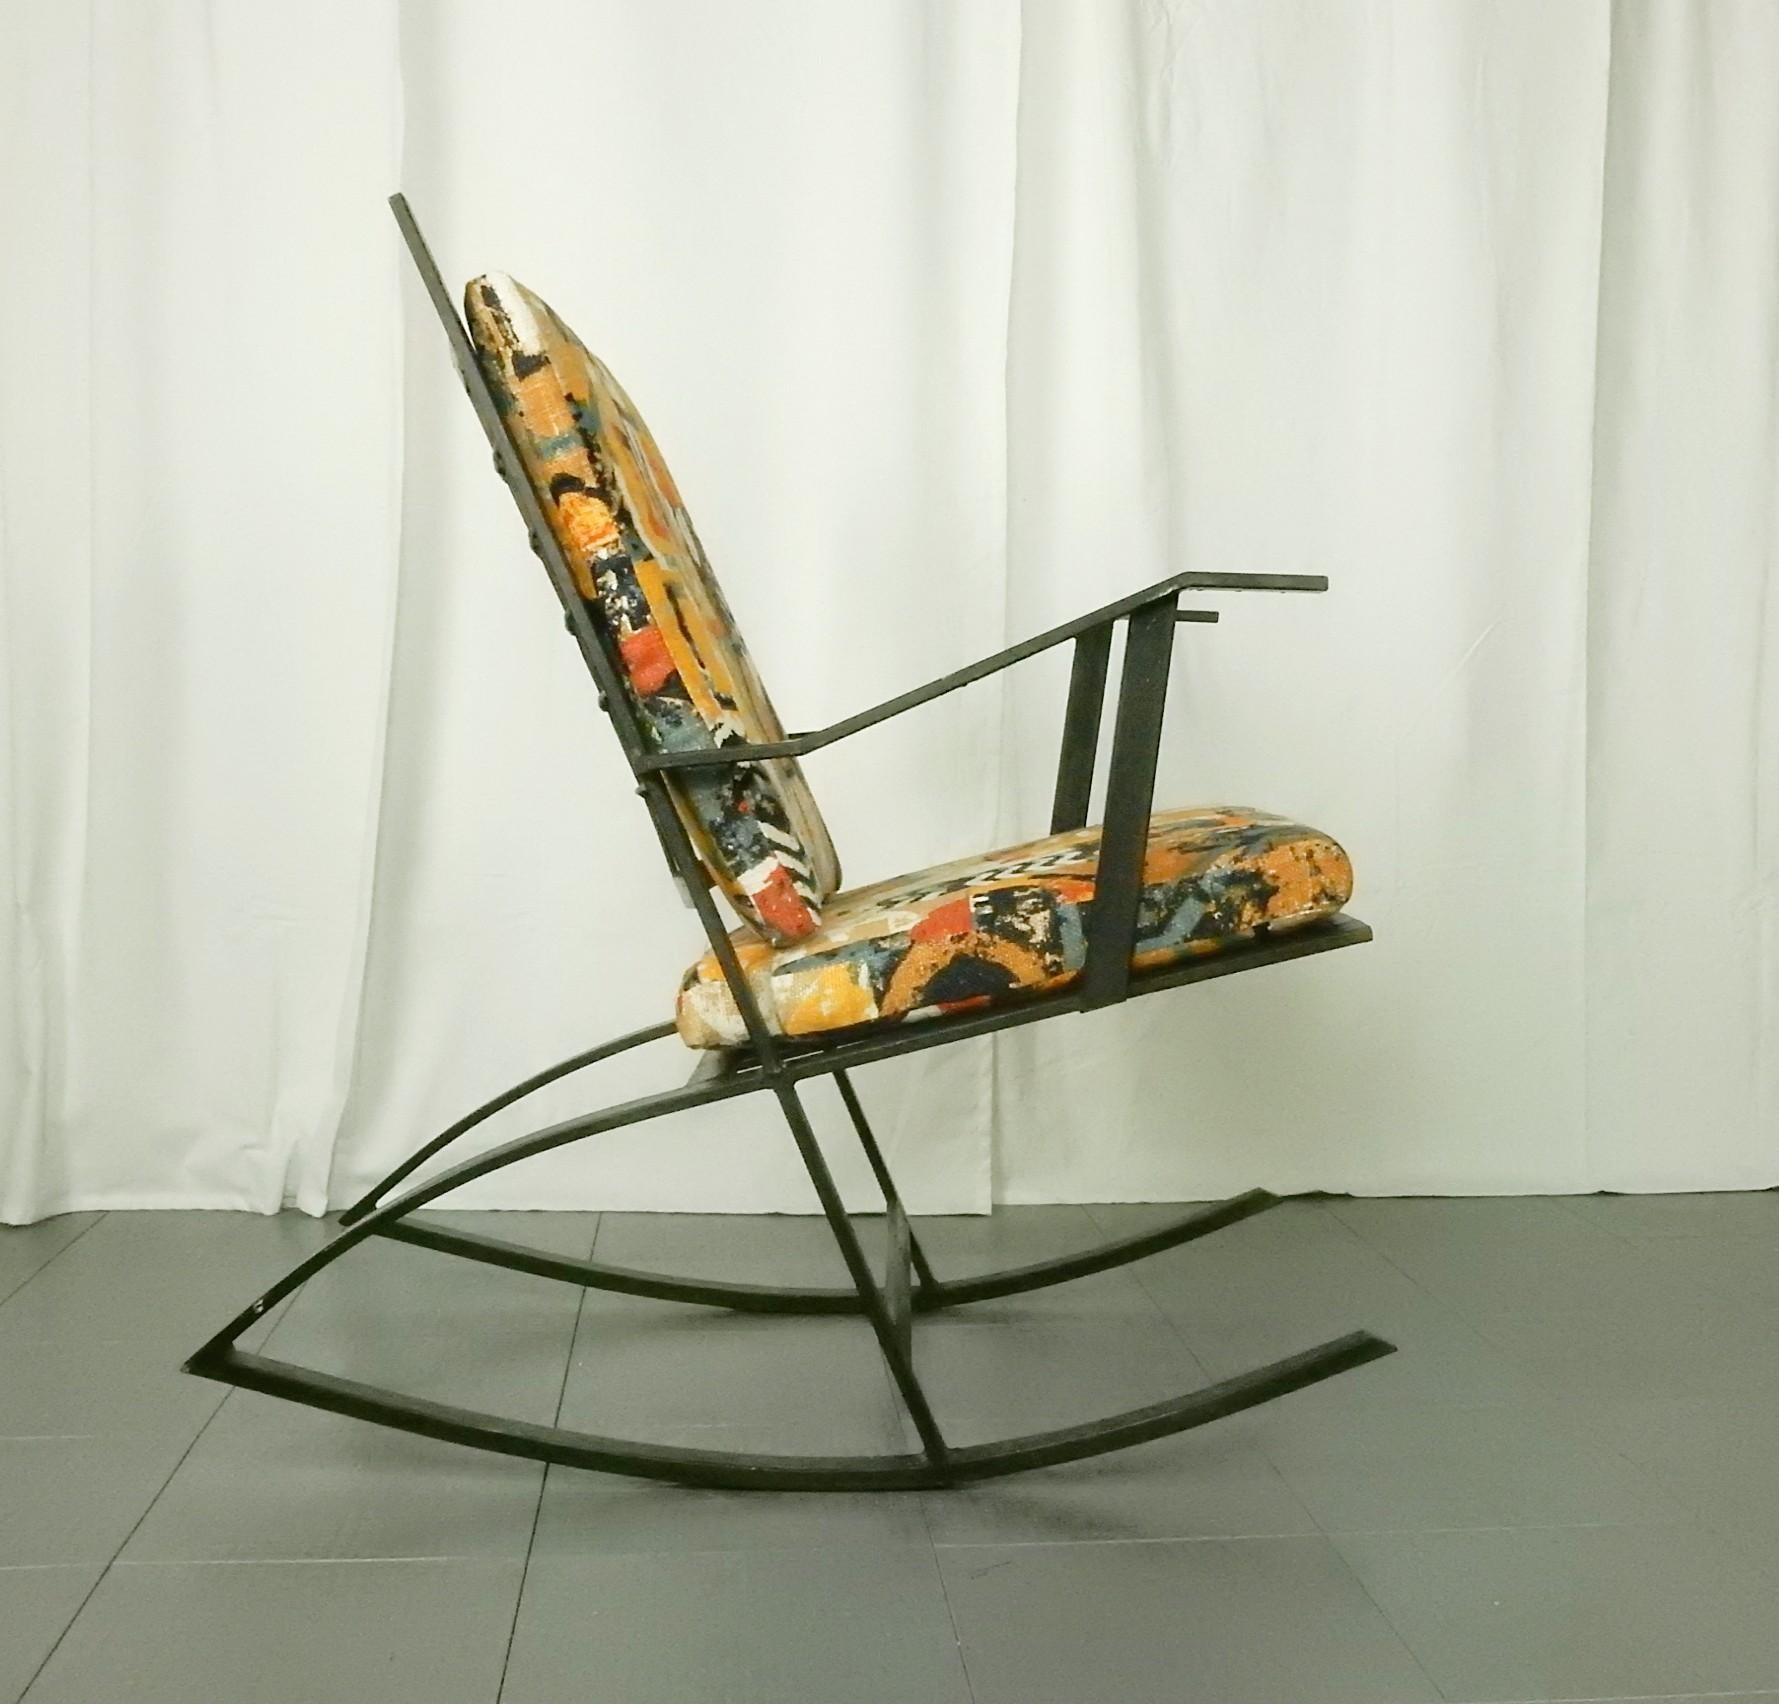 Chaise à bascule en acier sculpté à la manière du modèle en teck de Fredrik Kayser, vers les années 1960
Construction solide en acier soudé.
Magnifiques coussins d'assise et de dossier en tissu de lin graphique.
Une œuvre d'art unique,